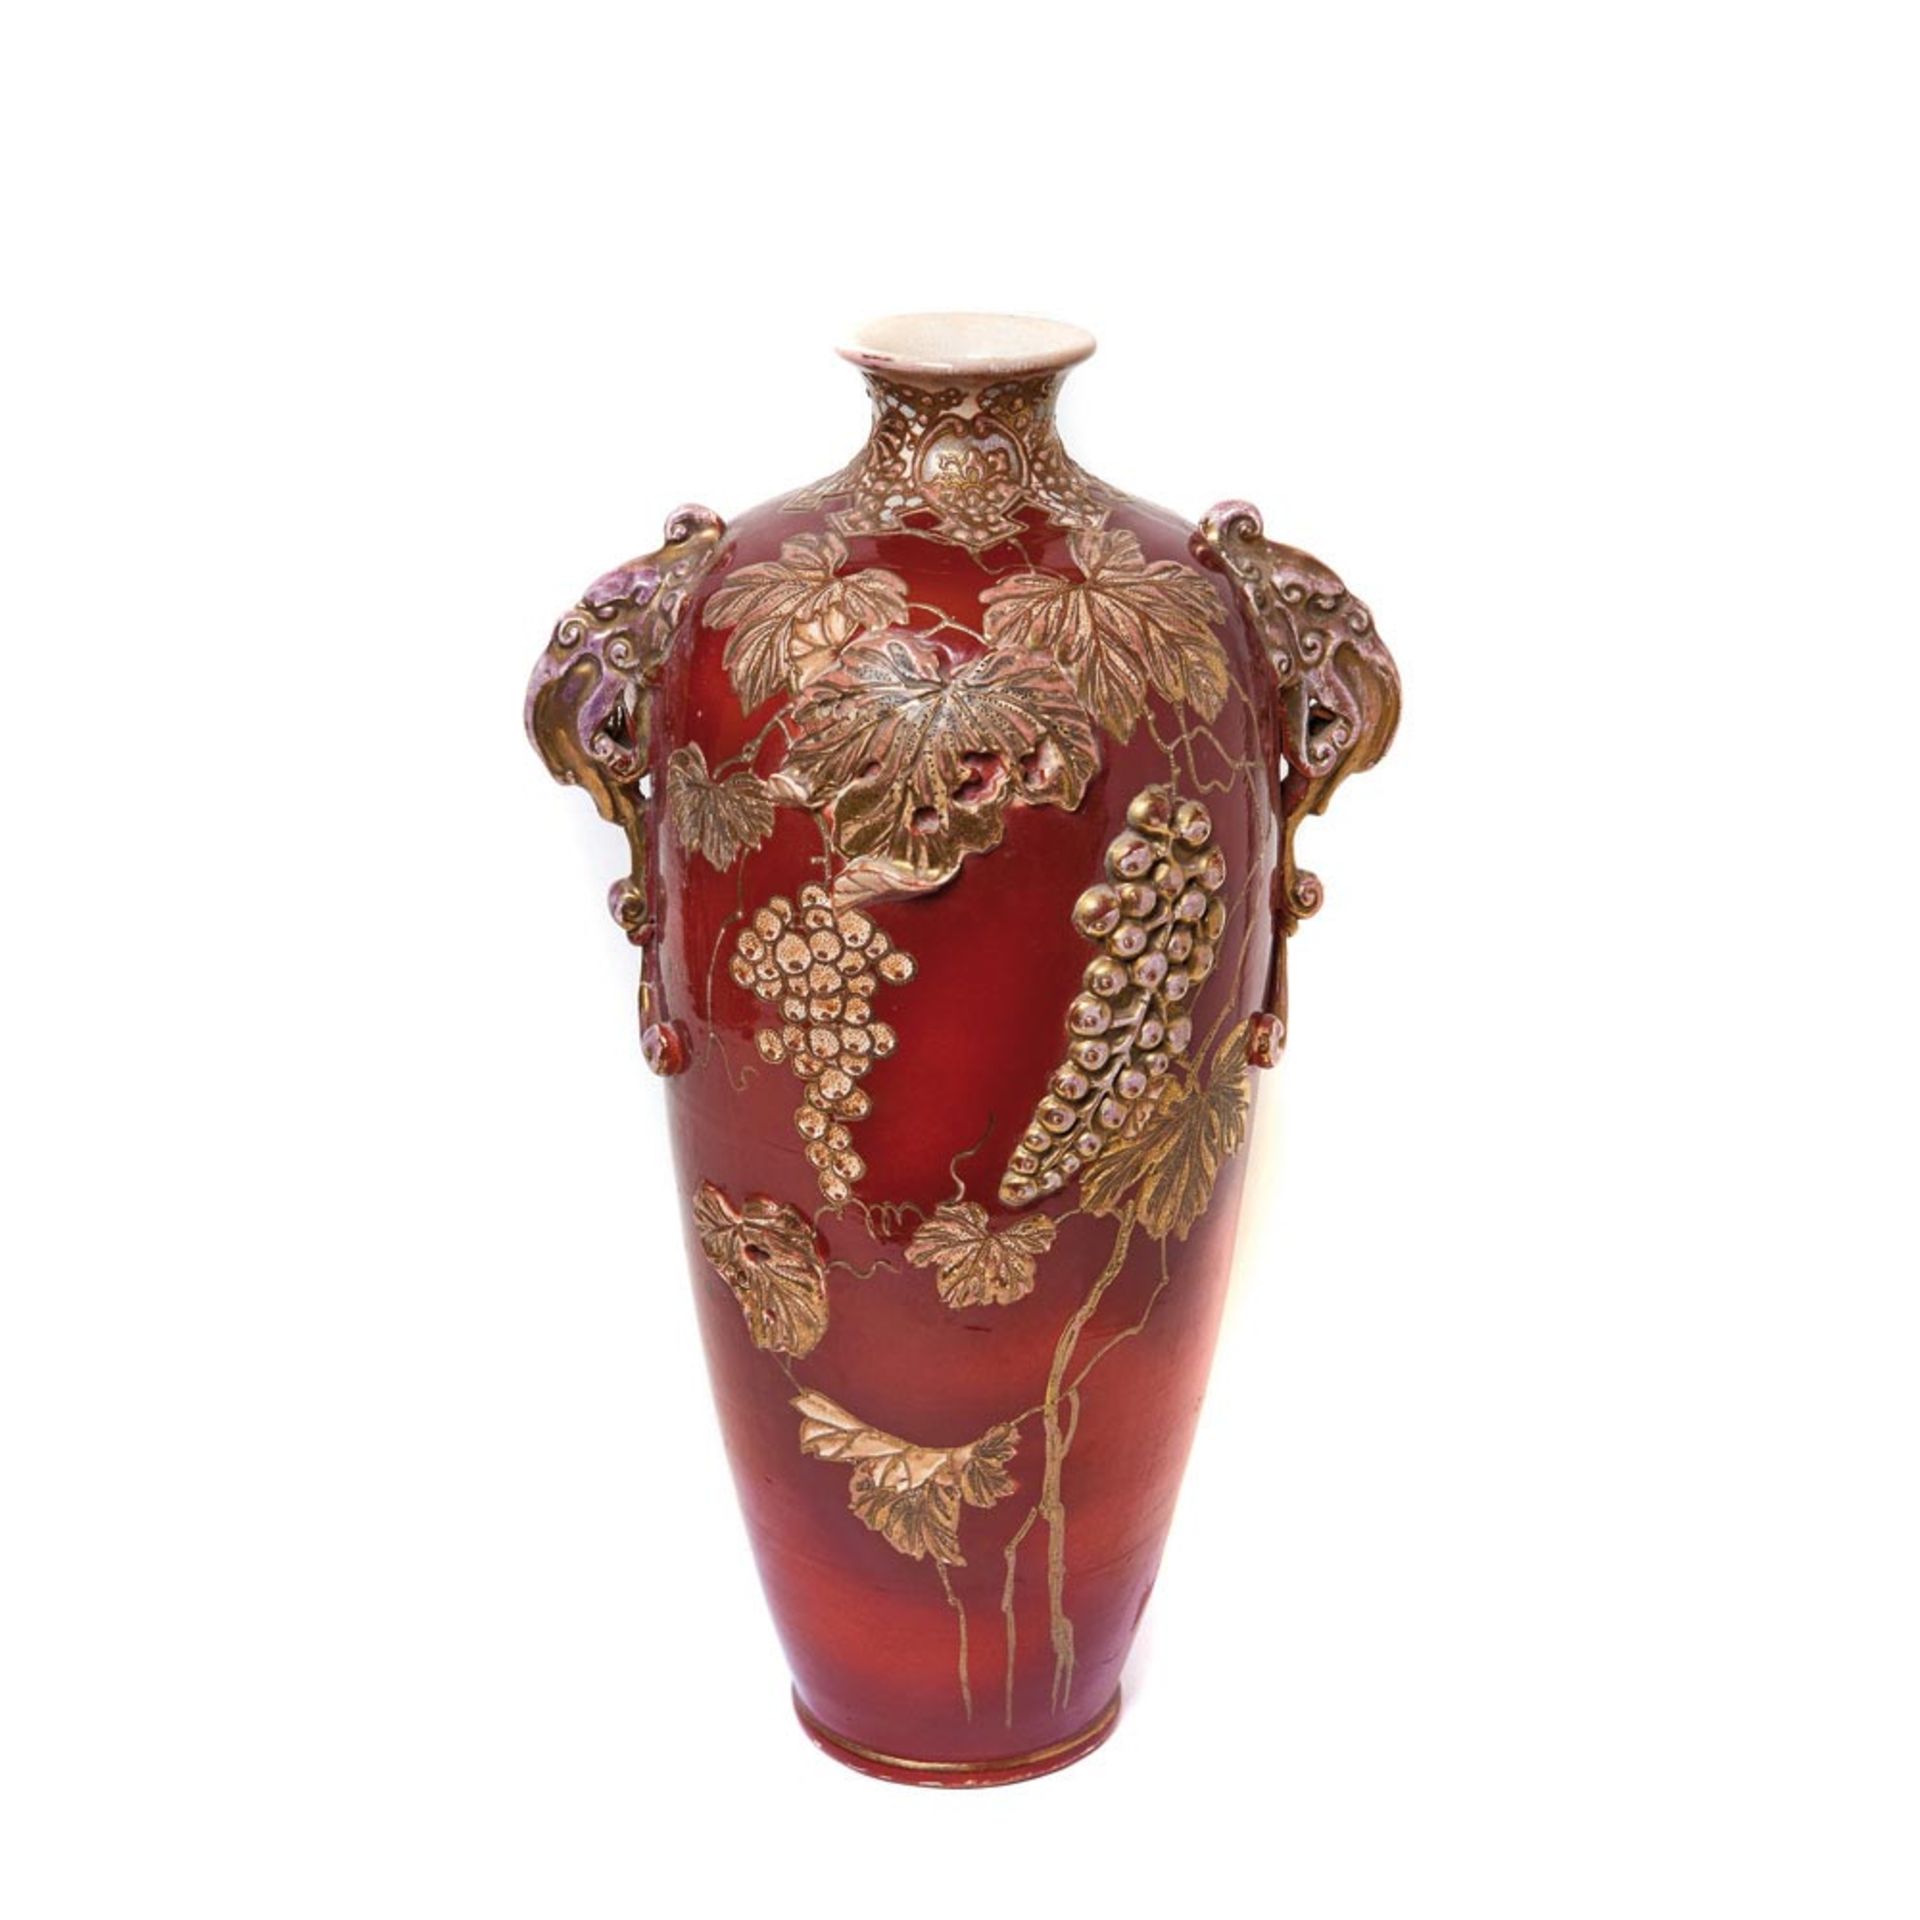 Japanese Satsuma ceramic vase, early 20th century